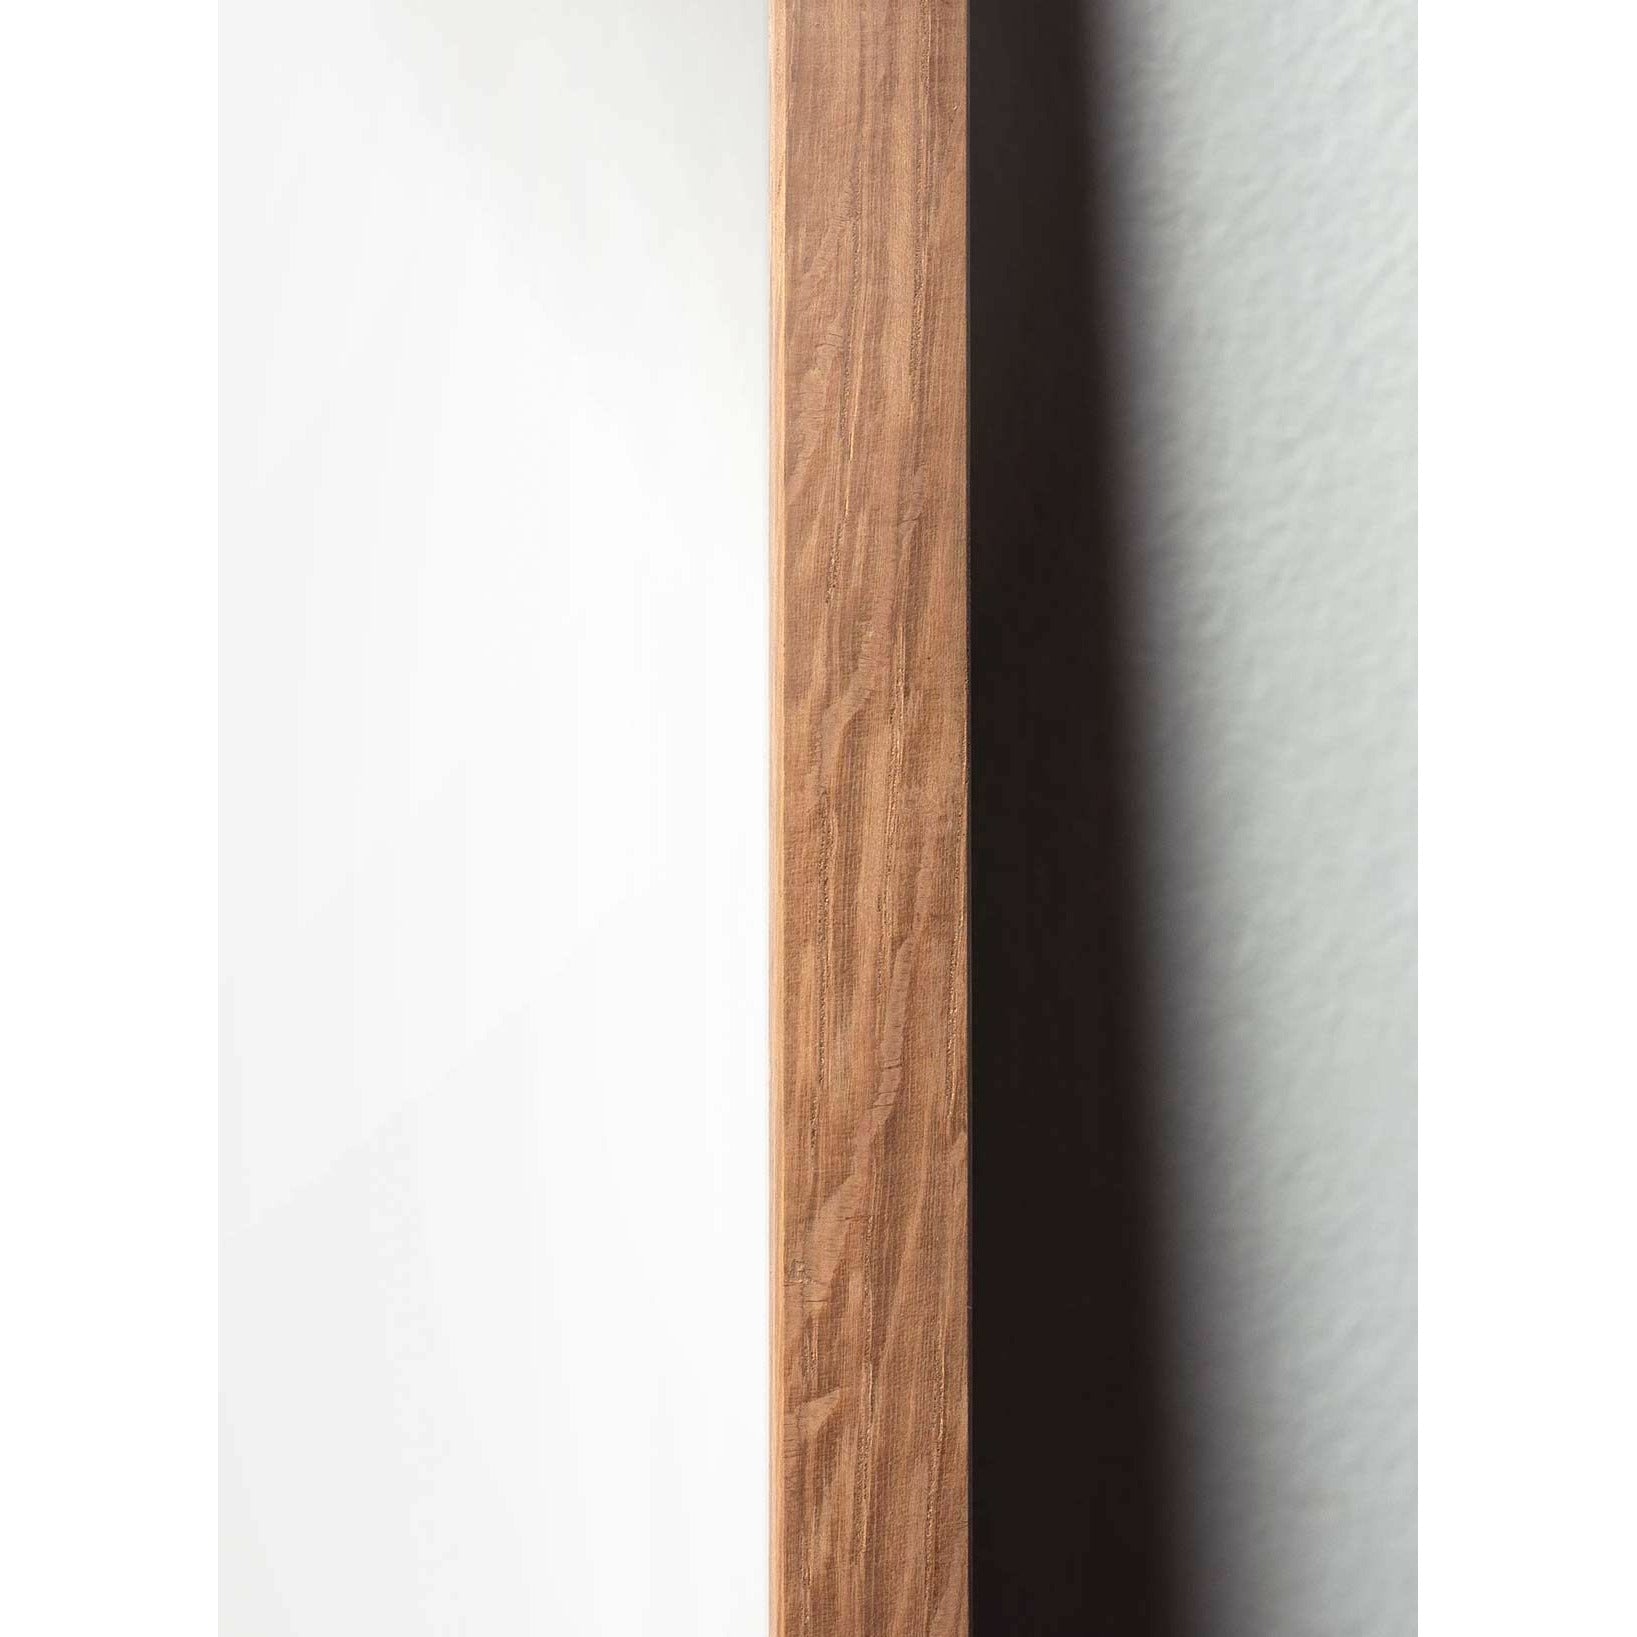 Pomysły klasyczny plakat mrówek, rama wykonana z jasnego drewna 70x100 cm, białe tło